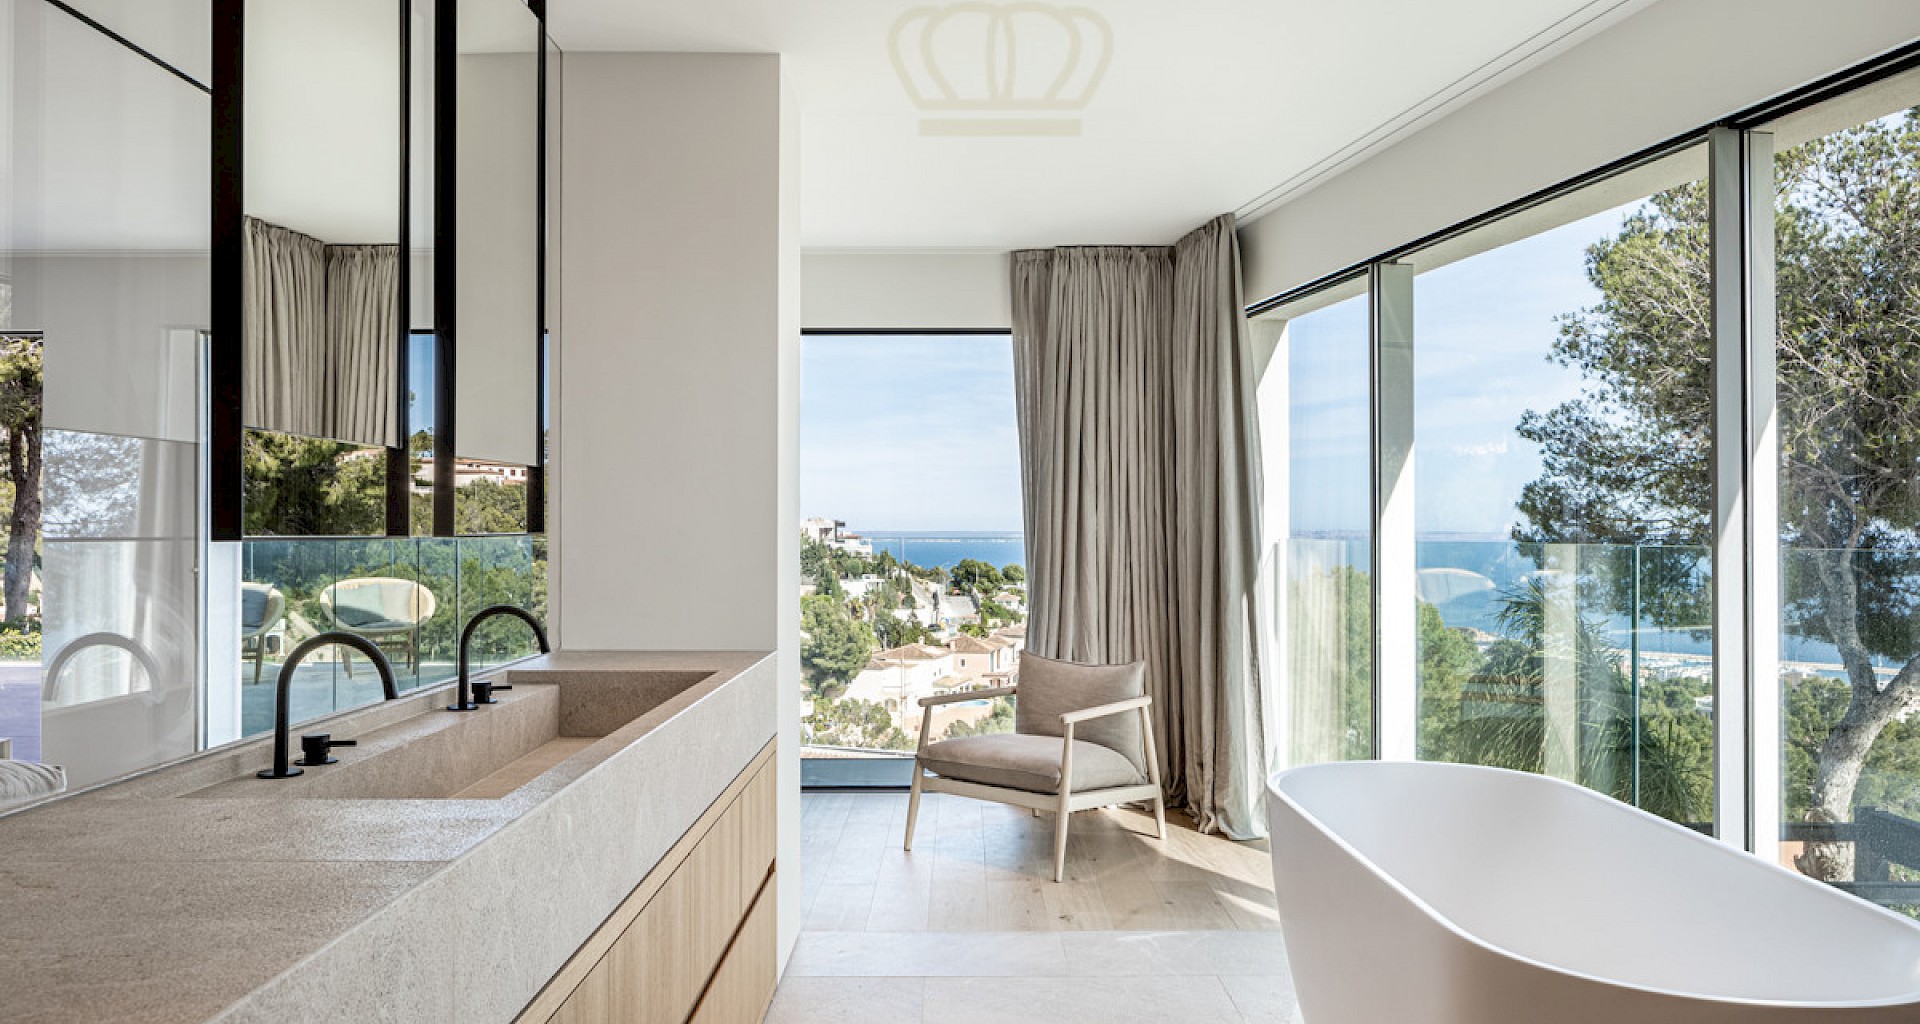 KROHN & LUEDEMANN Topmoderne Villa in Costa den Blanes mit Meerblick oberhalb von Portals Badezimmer mit Blick nach Puerto Portals